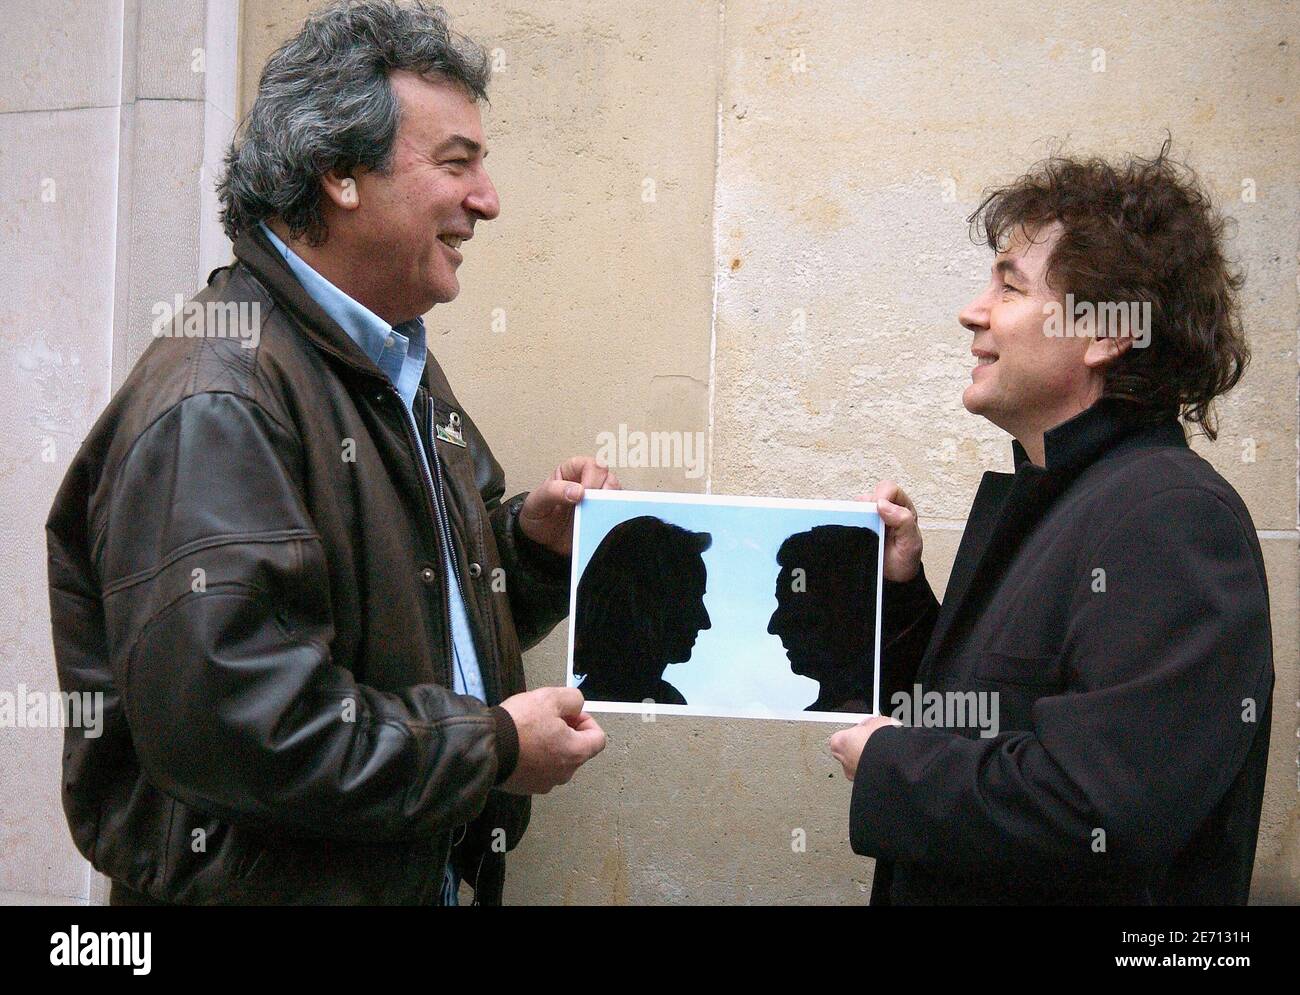 Framboisier (l) e Bernard Minet, membri della band francese Les Musers, posano a Parigi il 18 gennaio 2007. Un singolo della band, intitolato 'Nicolas et Segolene', è stato rilasciato dal 19 gennaio 2007. Parla con umorismo dei due principali candidati alle elezioni presidenziali francesi dell'aprile 2007, Nicolas Sarkozy e Segolene Royal. 'Les Muls' si è esibito negli anni '90 nel programma televisivo 'le Club Dorotee'. Questo spettacolo e la band terminarono nel 1997. Foto di Jules Motte/ABACAPRESS.COM Foto Stock